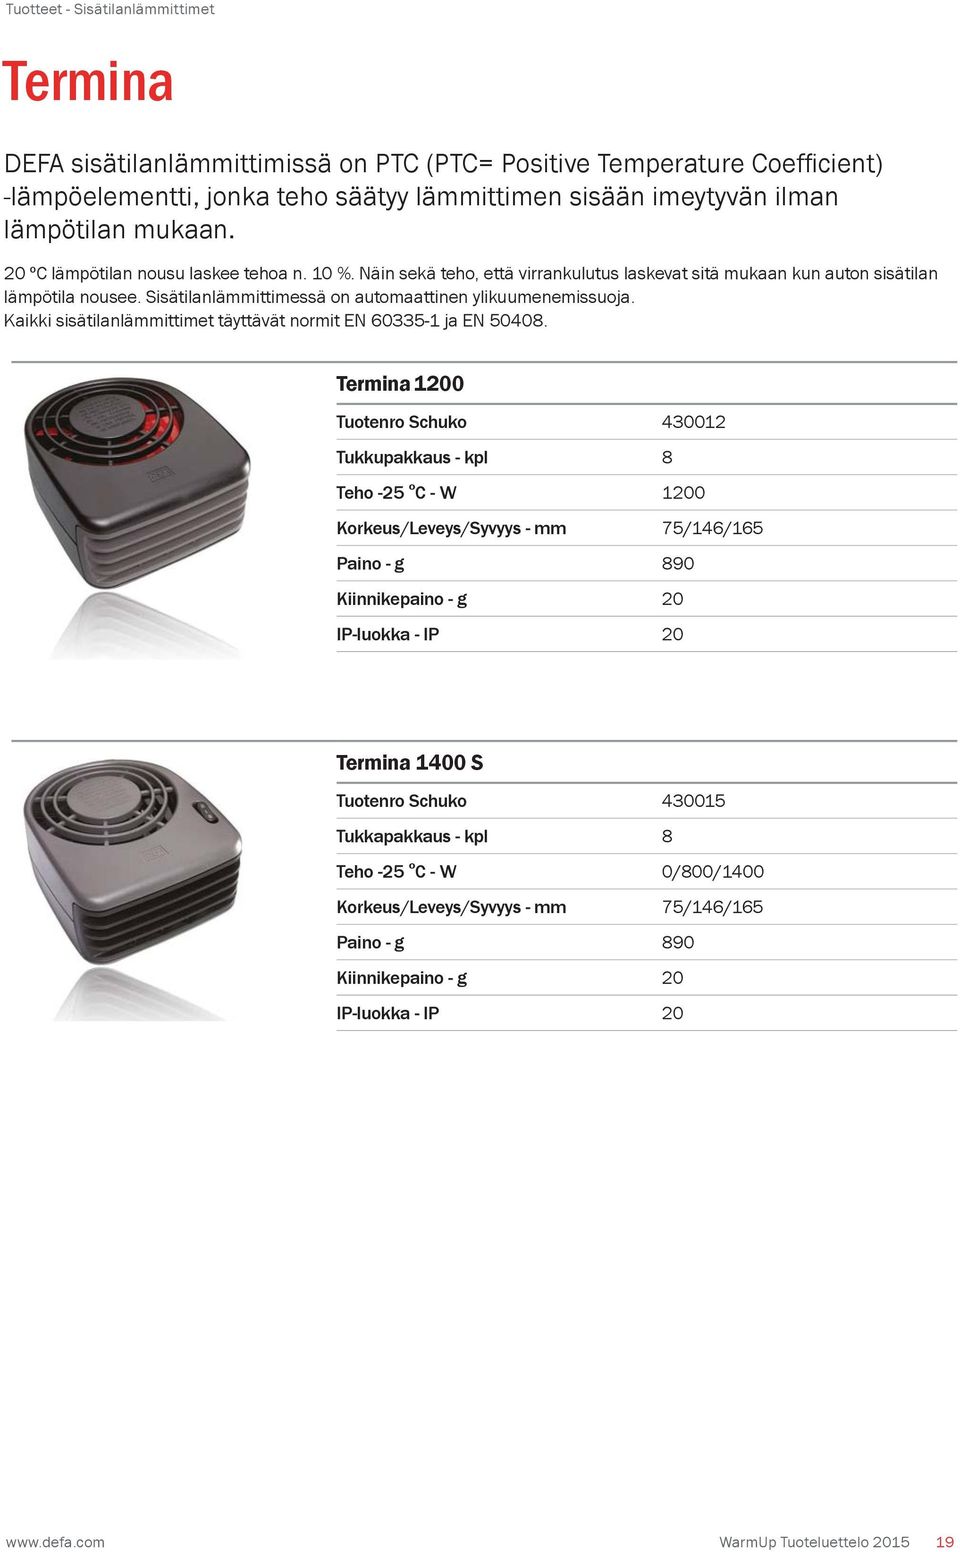 Sisätilanlämmittimessä on automaattinen ylikuumenemissuoja. Kaikki sisätilanlämmittimet täyttävät normit EN 60335-1 ja EN 50408.